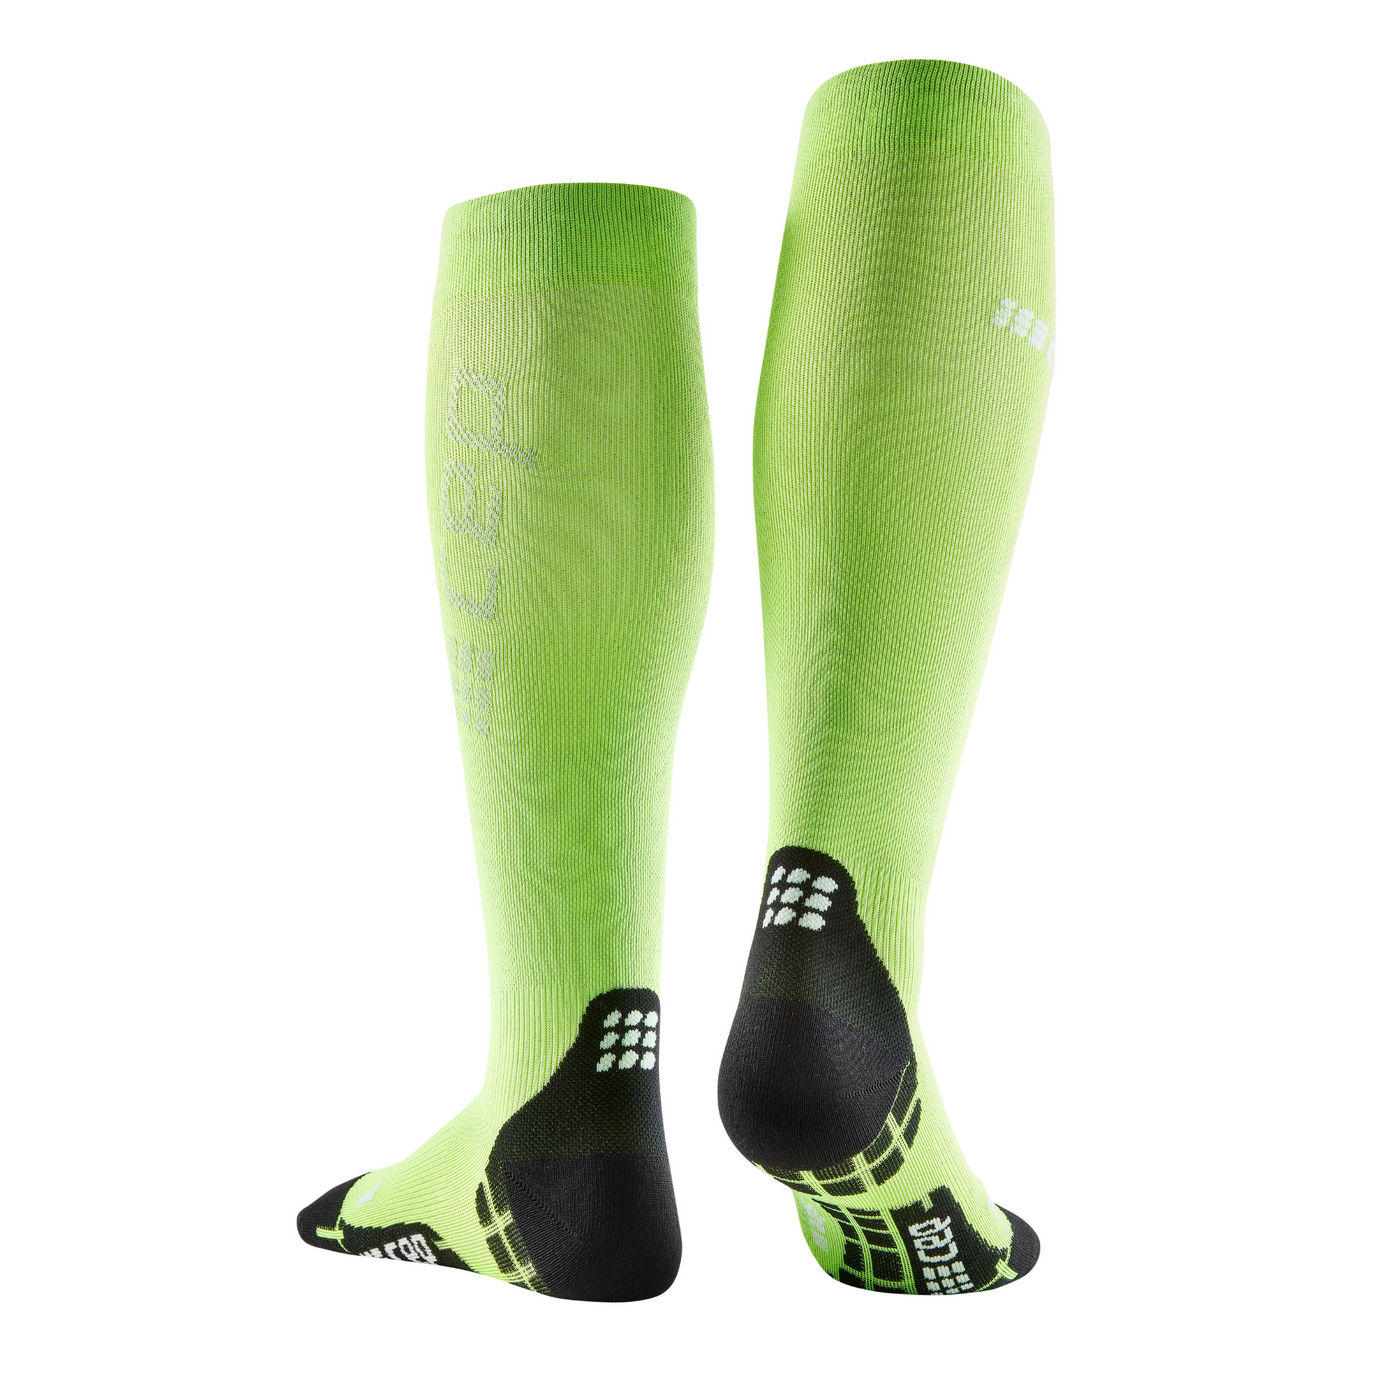 Ultralight Tall Compression Socks, Women, Flash Green, Back View